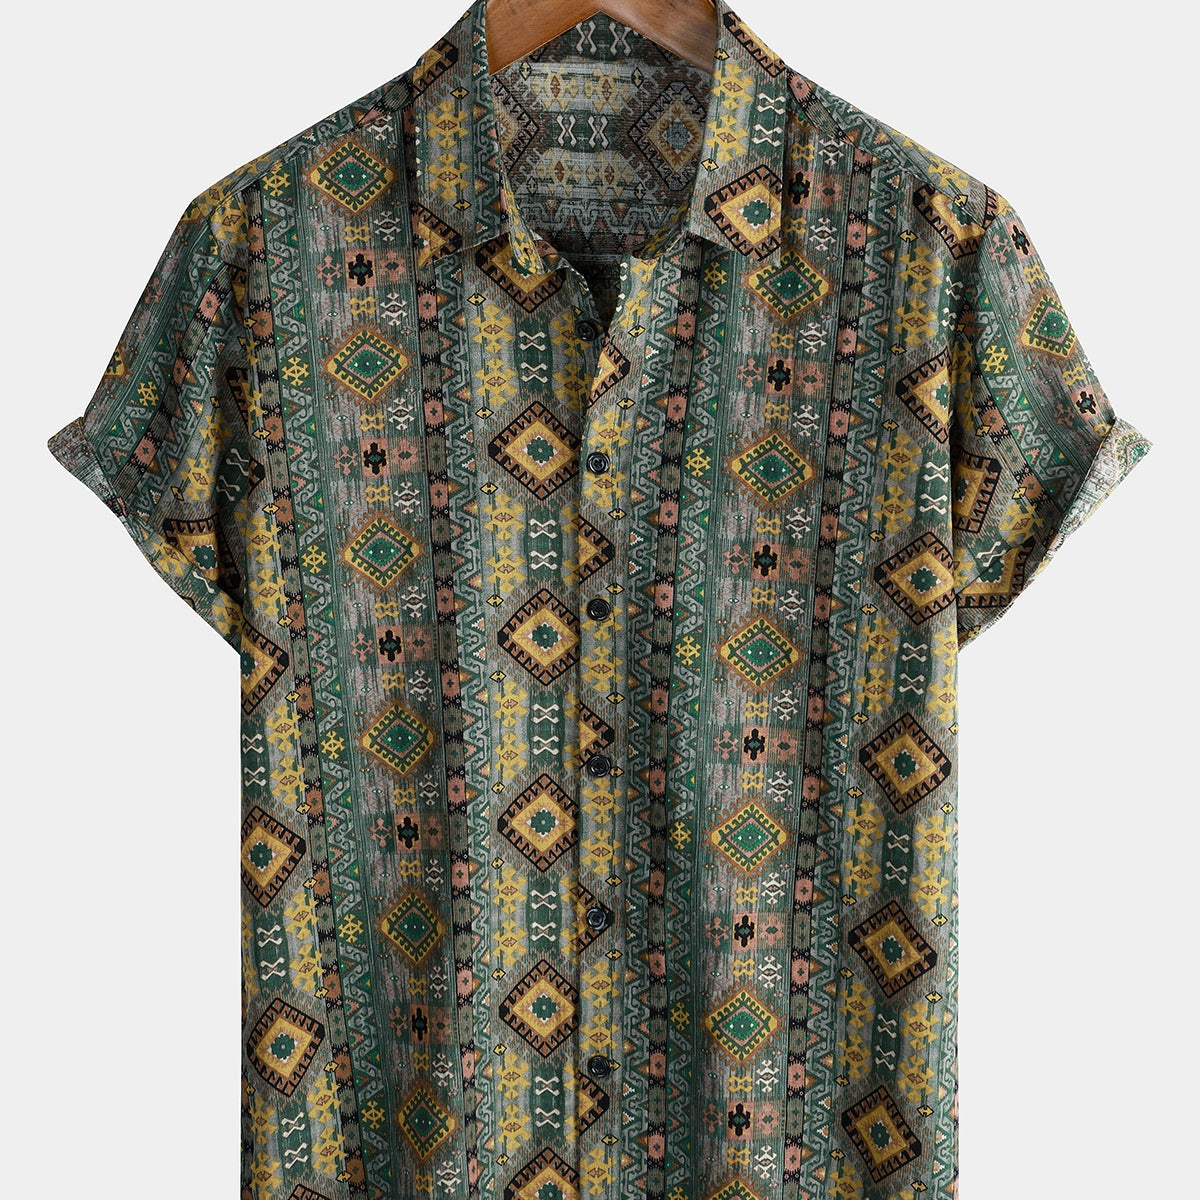 Chemise boutonnée rétro à manches courtes pour hommes, imprimé aztèque des années 70